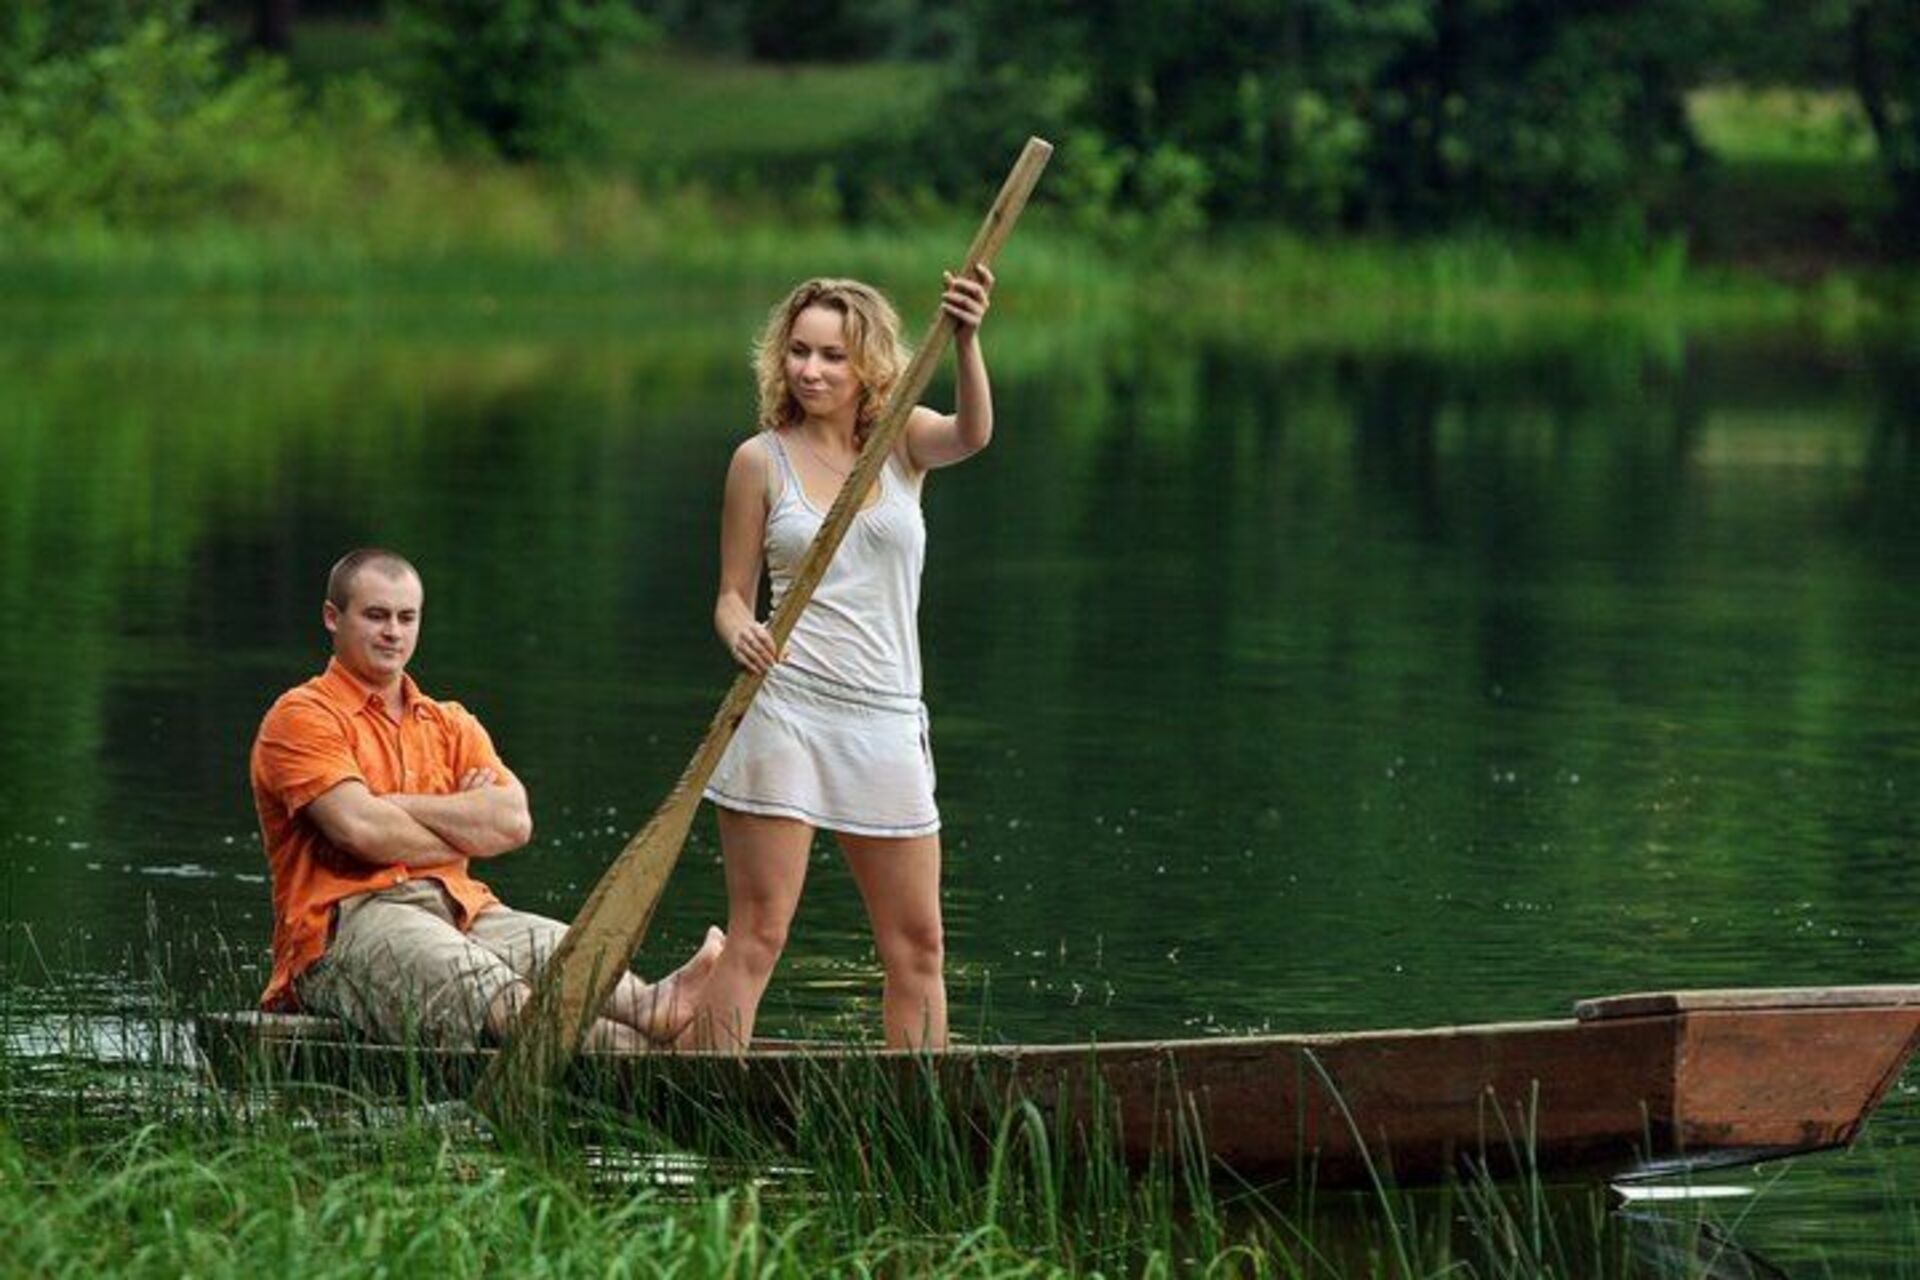 Русская тетка с парнем. Девушка на лодке с веслами. Мужчина и женщина на рыбалке. Женщина и мужчина рыбачат. Равноправие мужчин и женщин юмор.